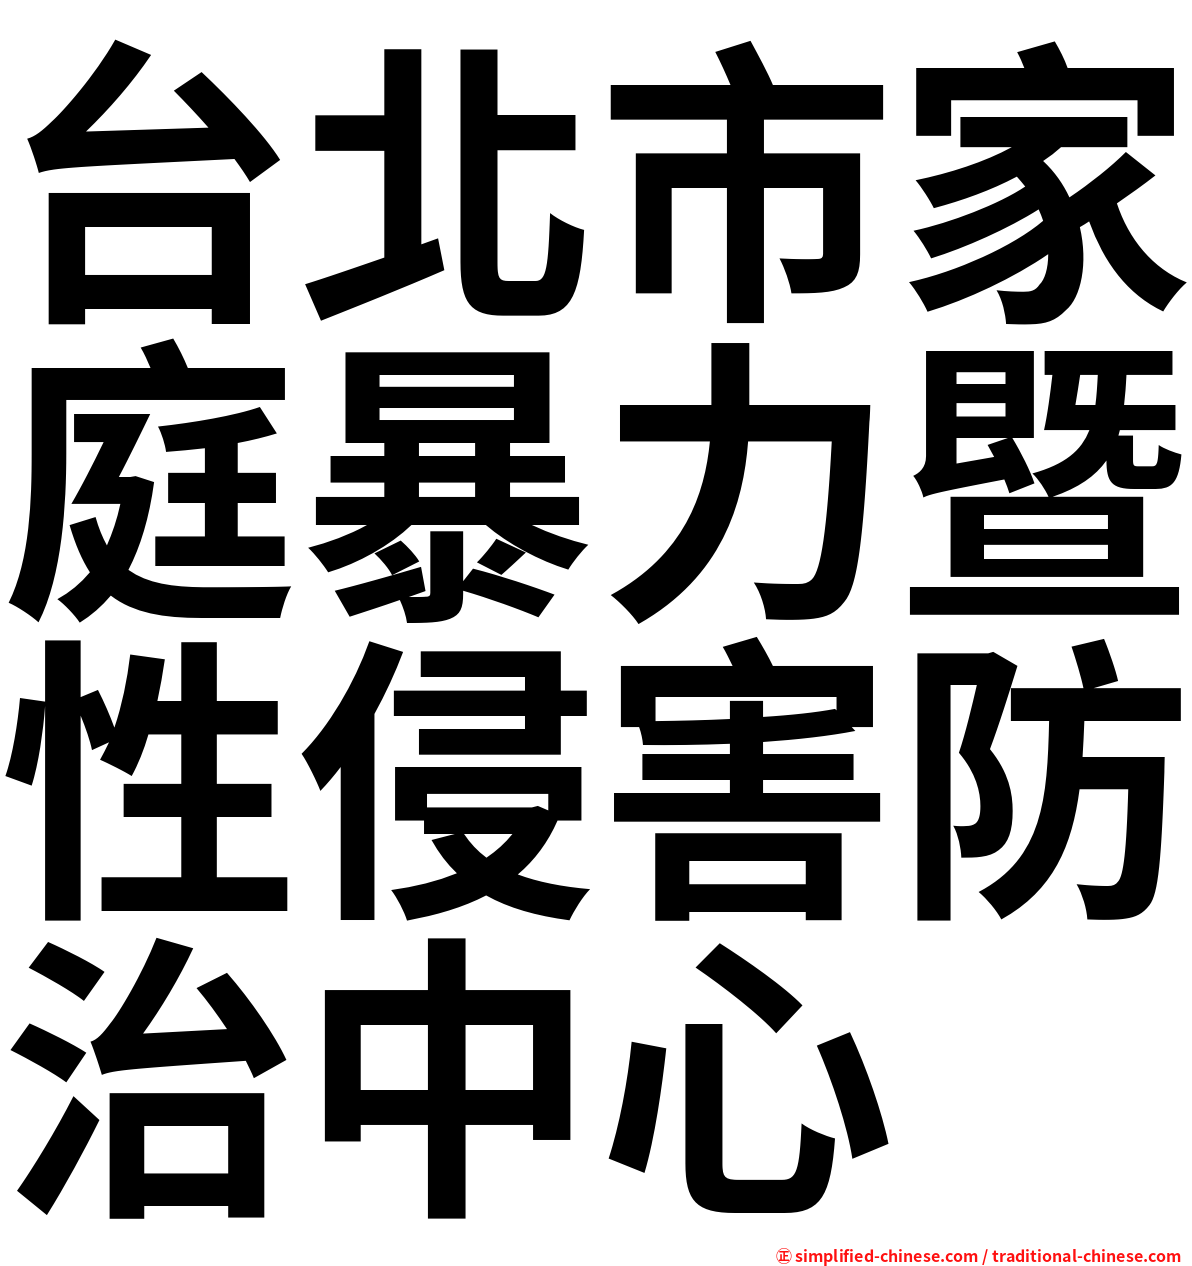 台北市家庭暴力暨性侵害防治中心